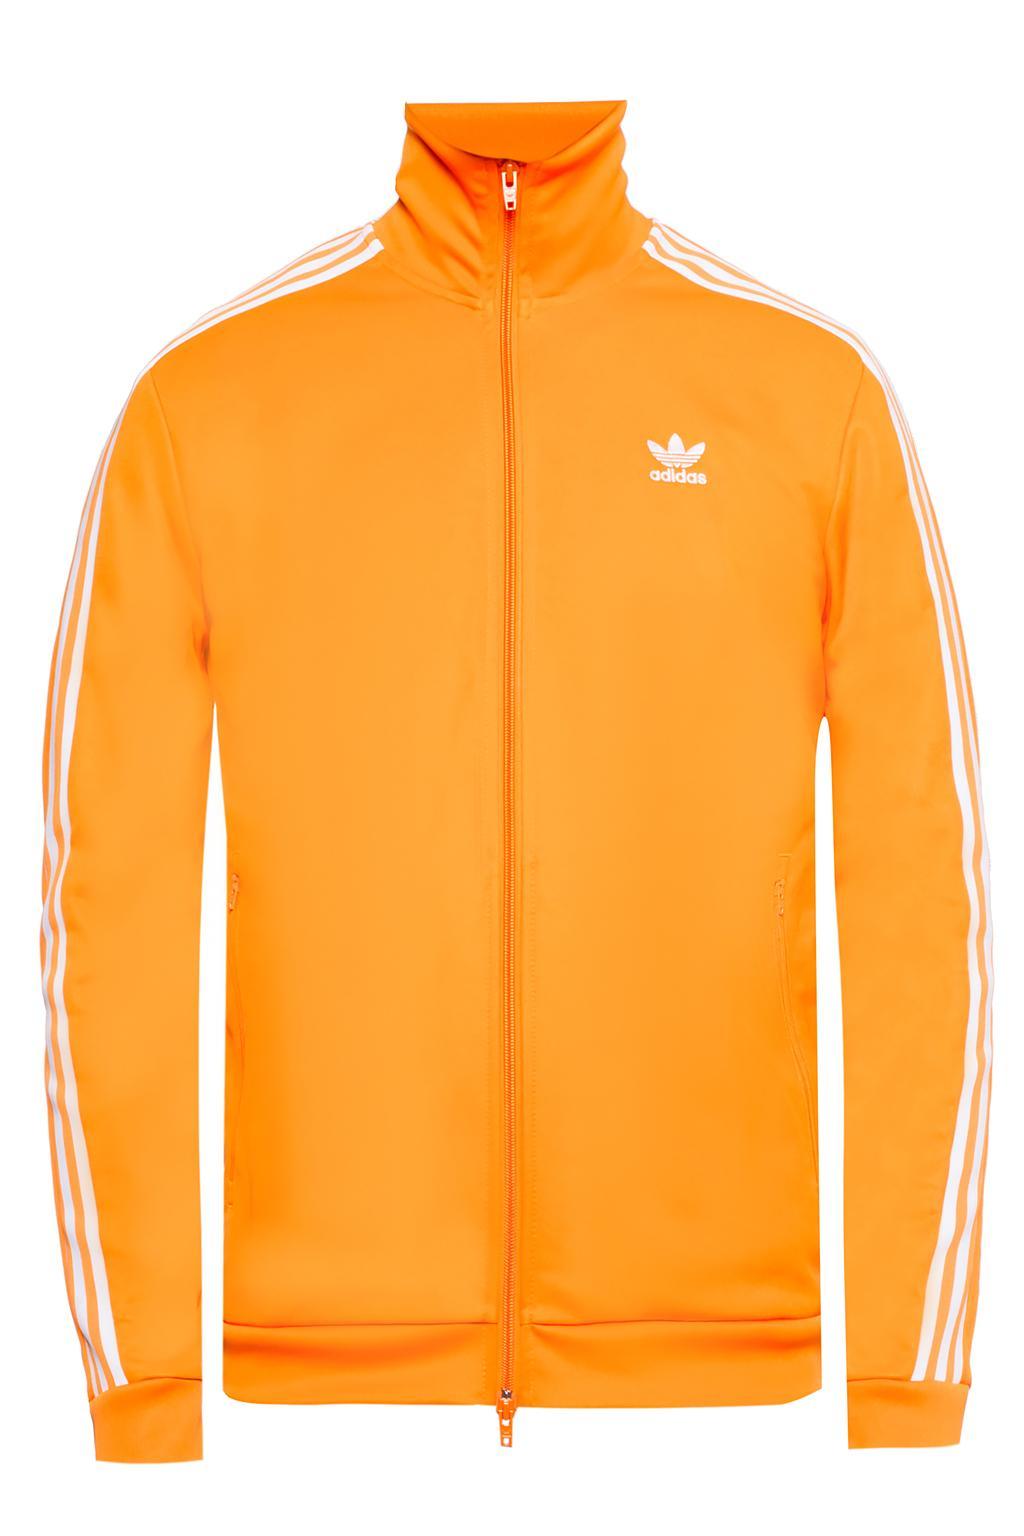 adidas Originals Raised Collar Sweatshirt in Orange for Men - Lyst